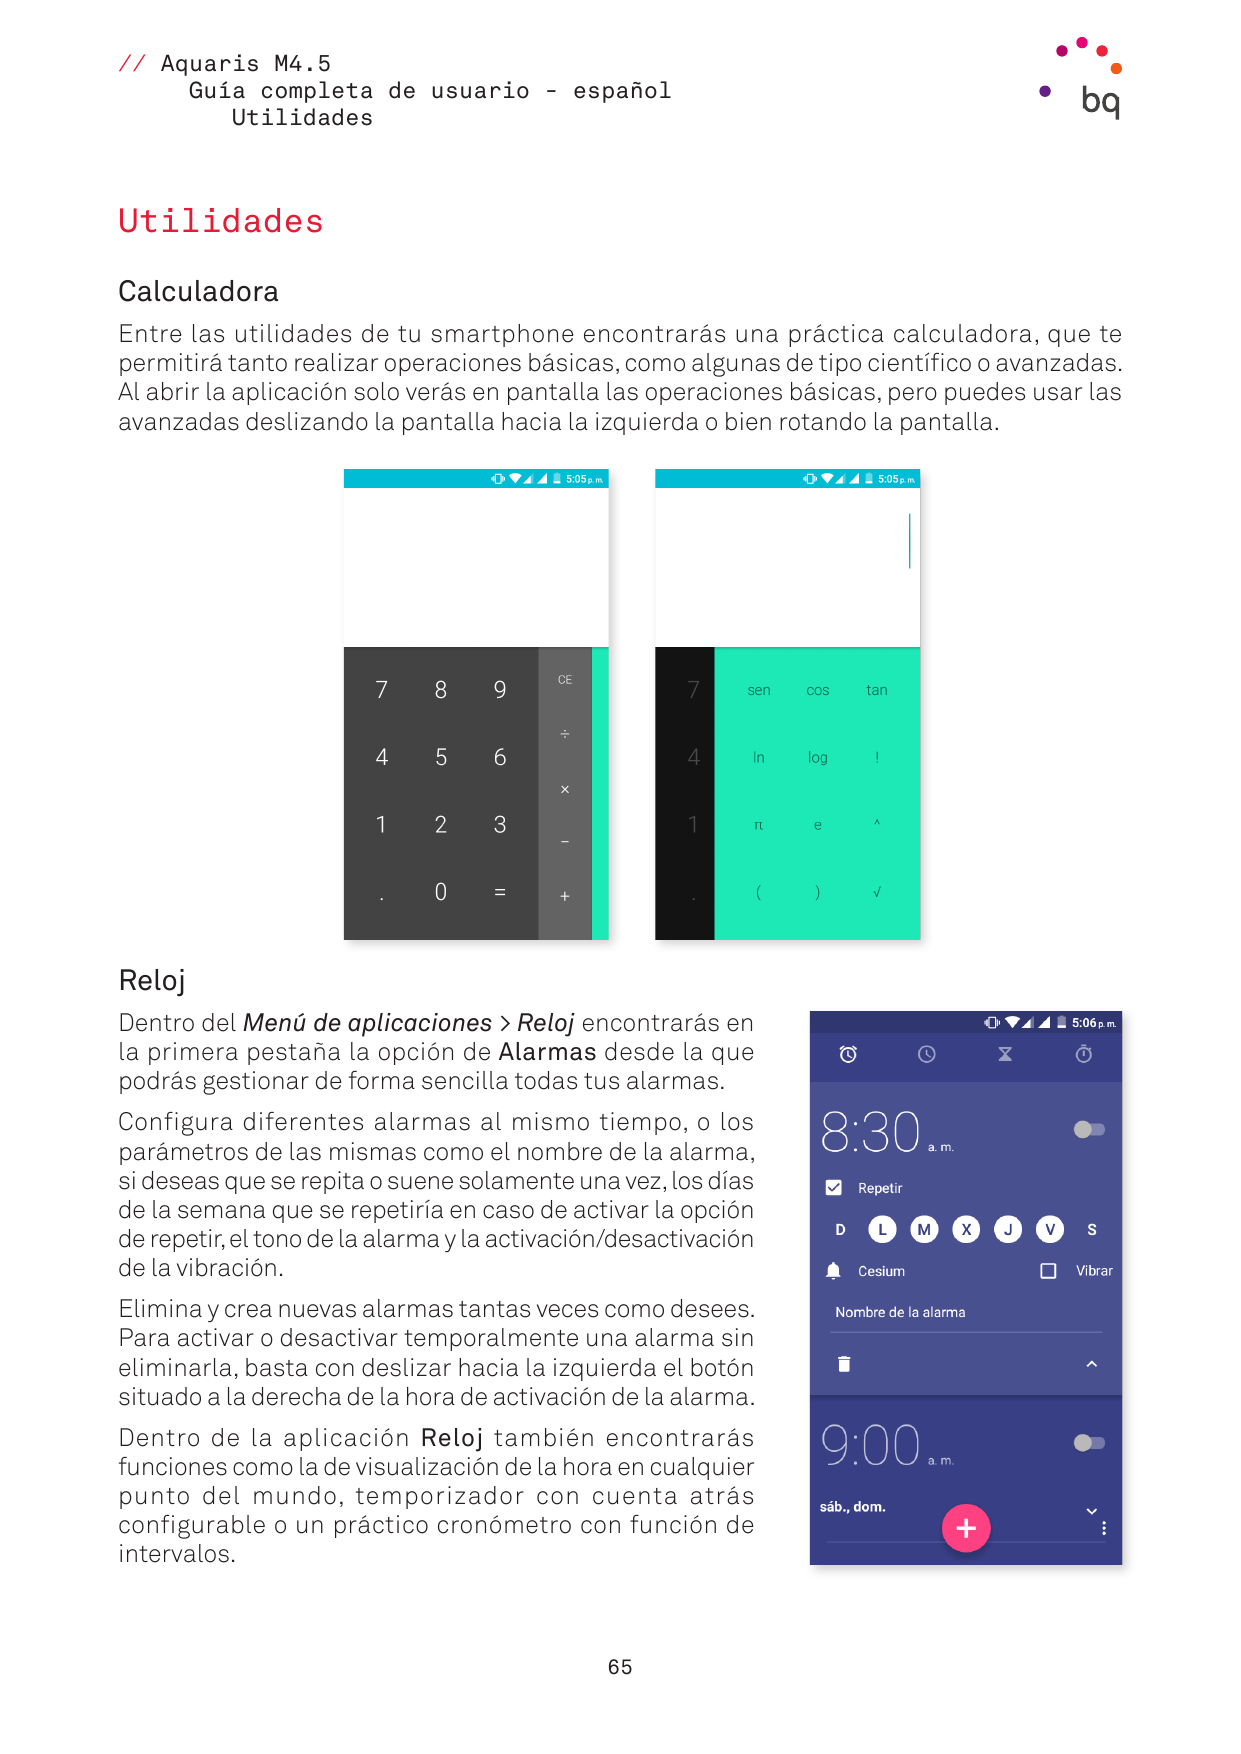 // Aquaris M4.5Guía completa de usuario - españolUtilidadesUtilidadesCalculadoraEntre las utilidades de tu smartphone encontrará